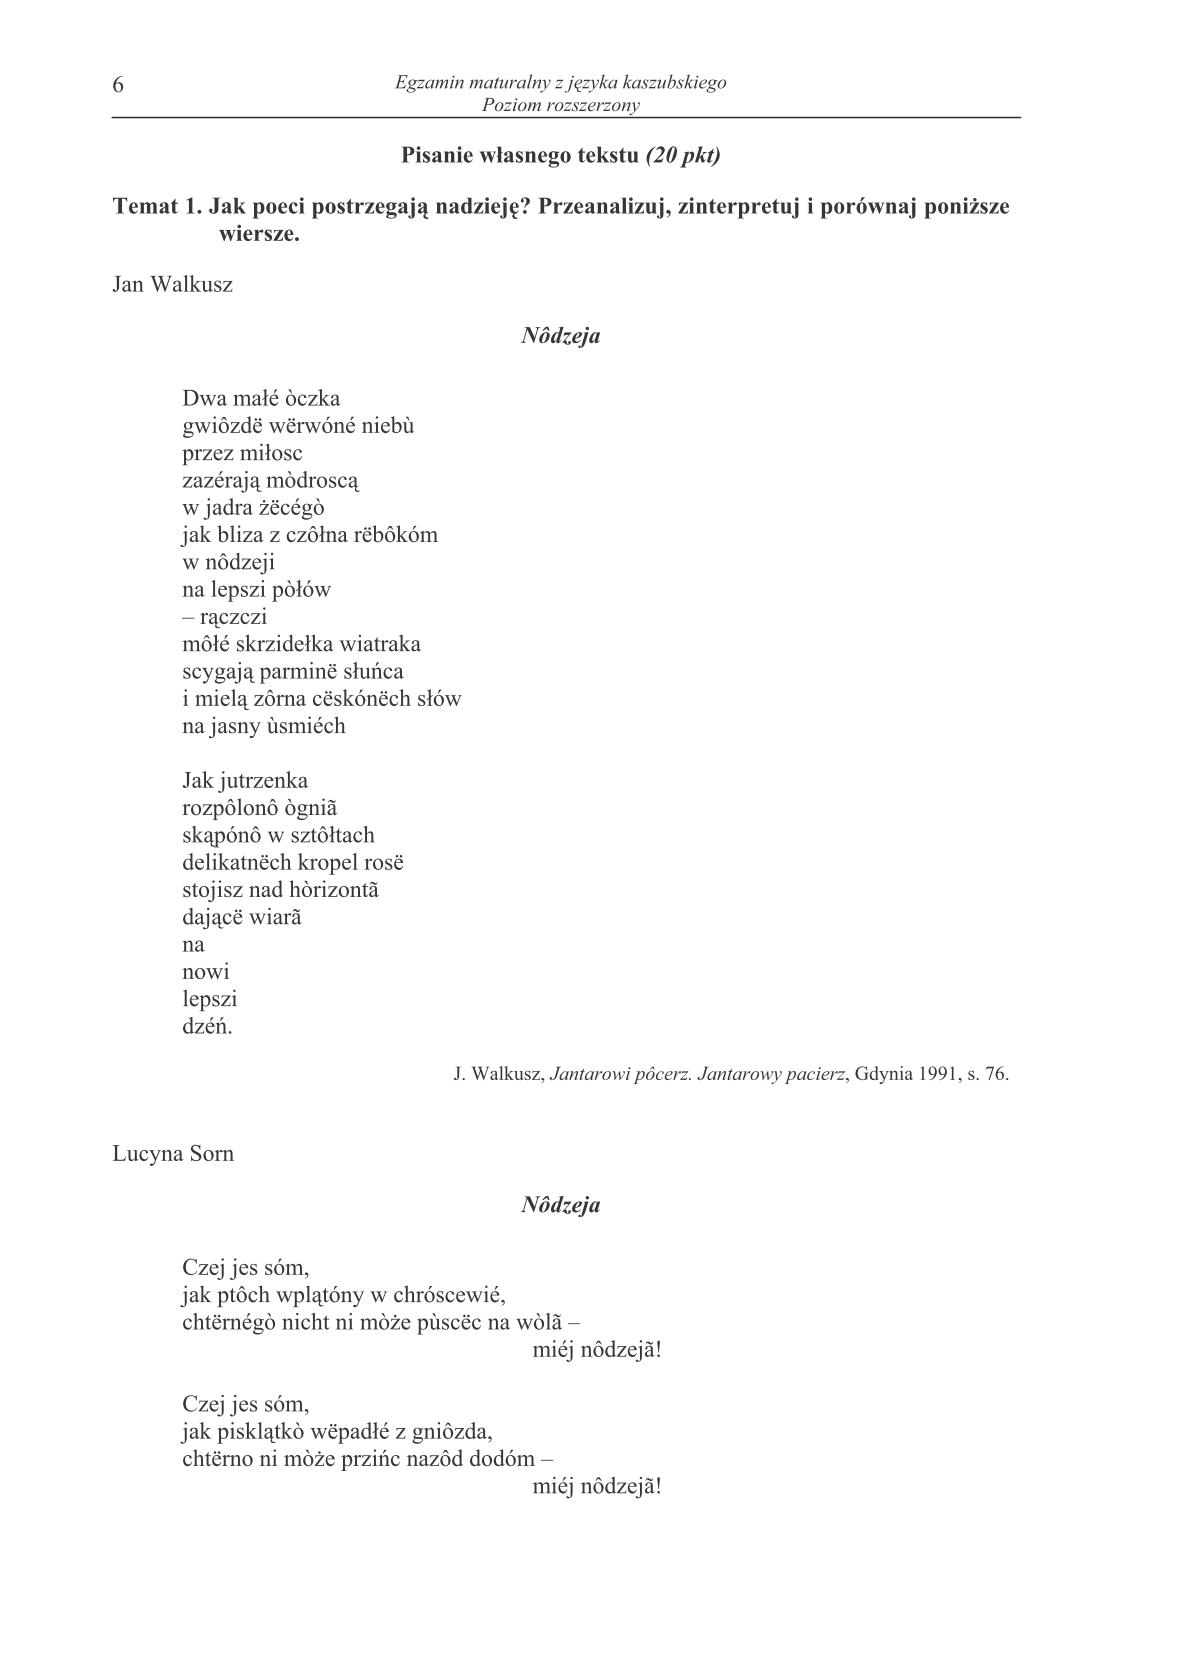 pytania-jezyk-kaszubski-poziom-rozszerzony-matura-2014-str.6